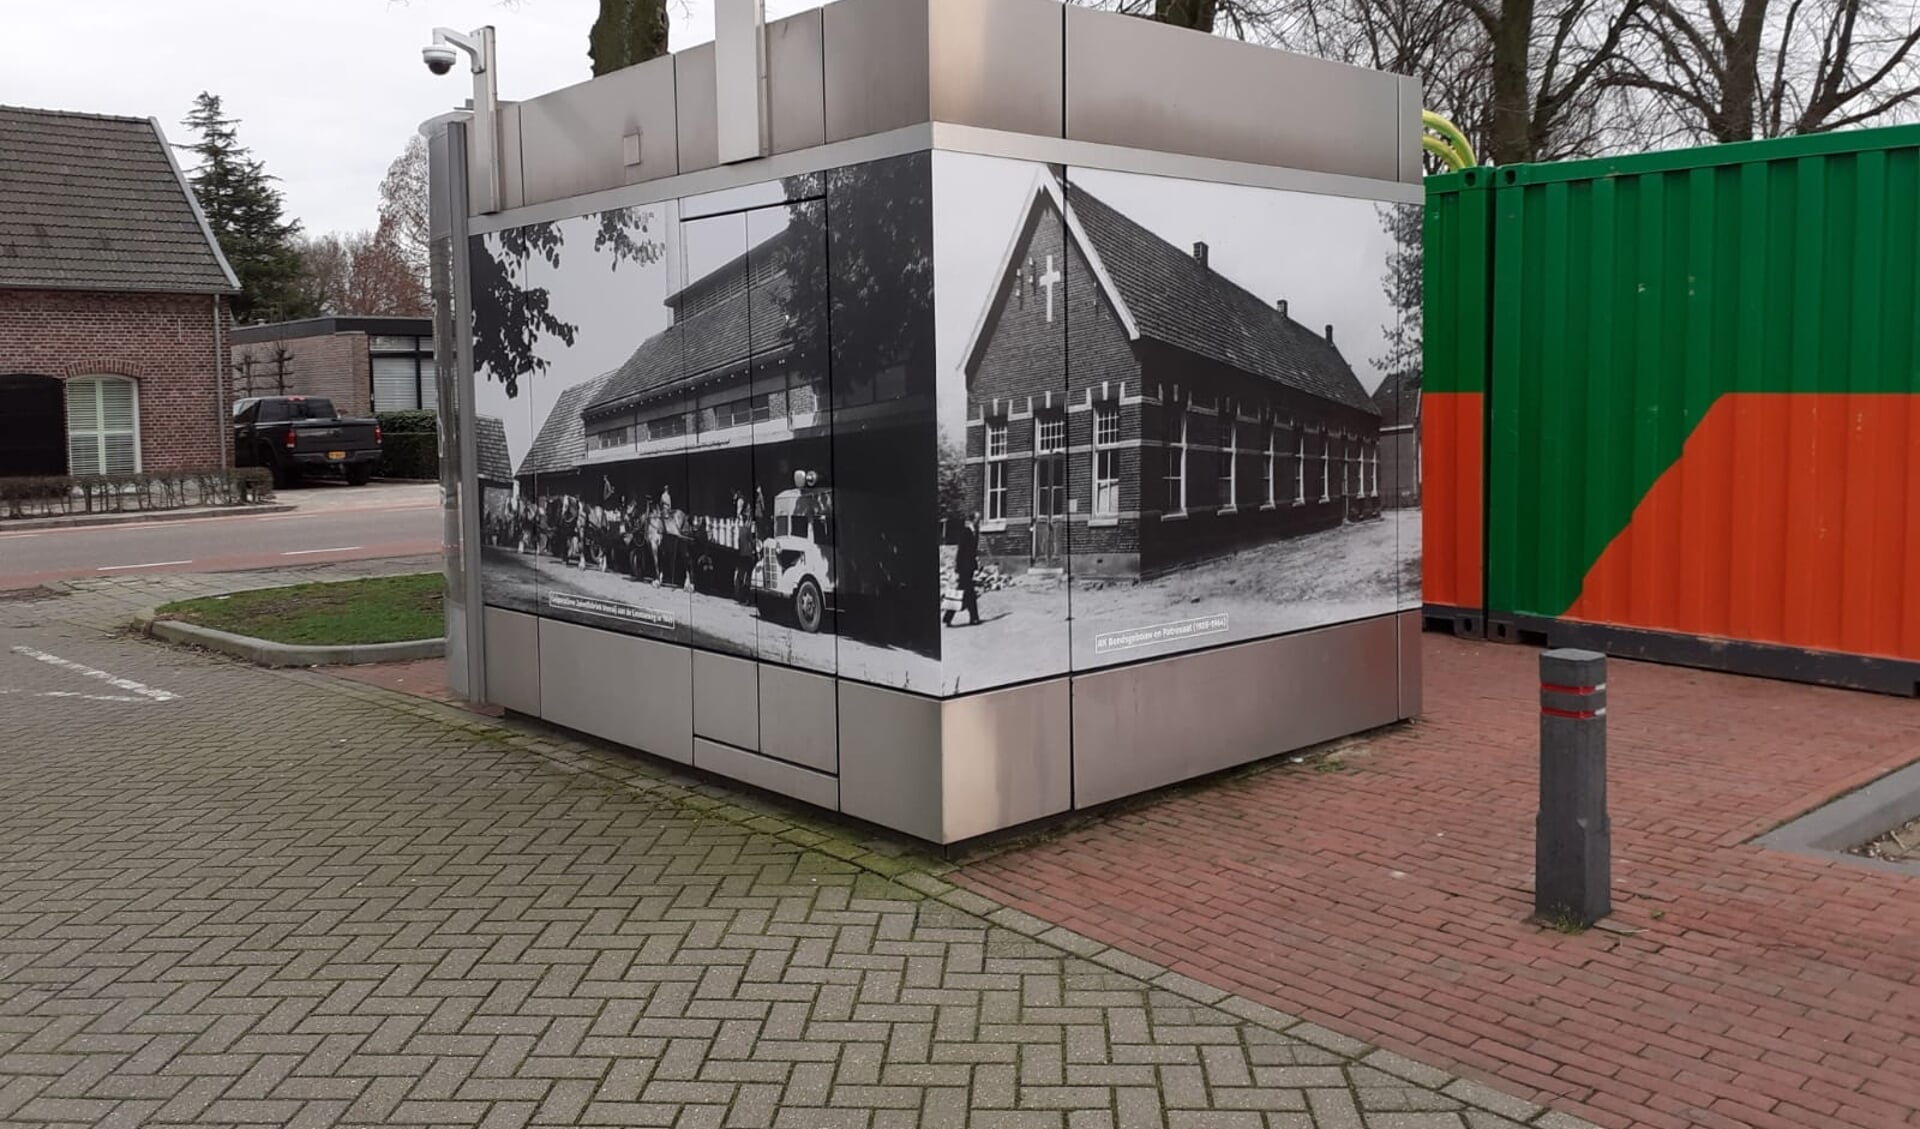 Historische foto’s op pinautomaat Leunen.